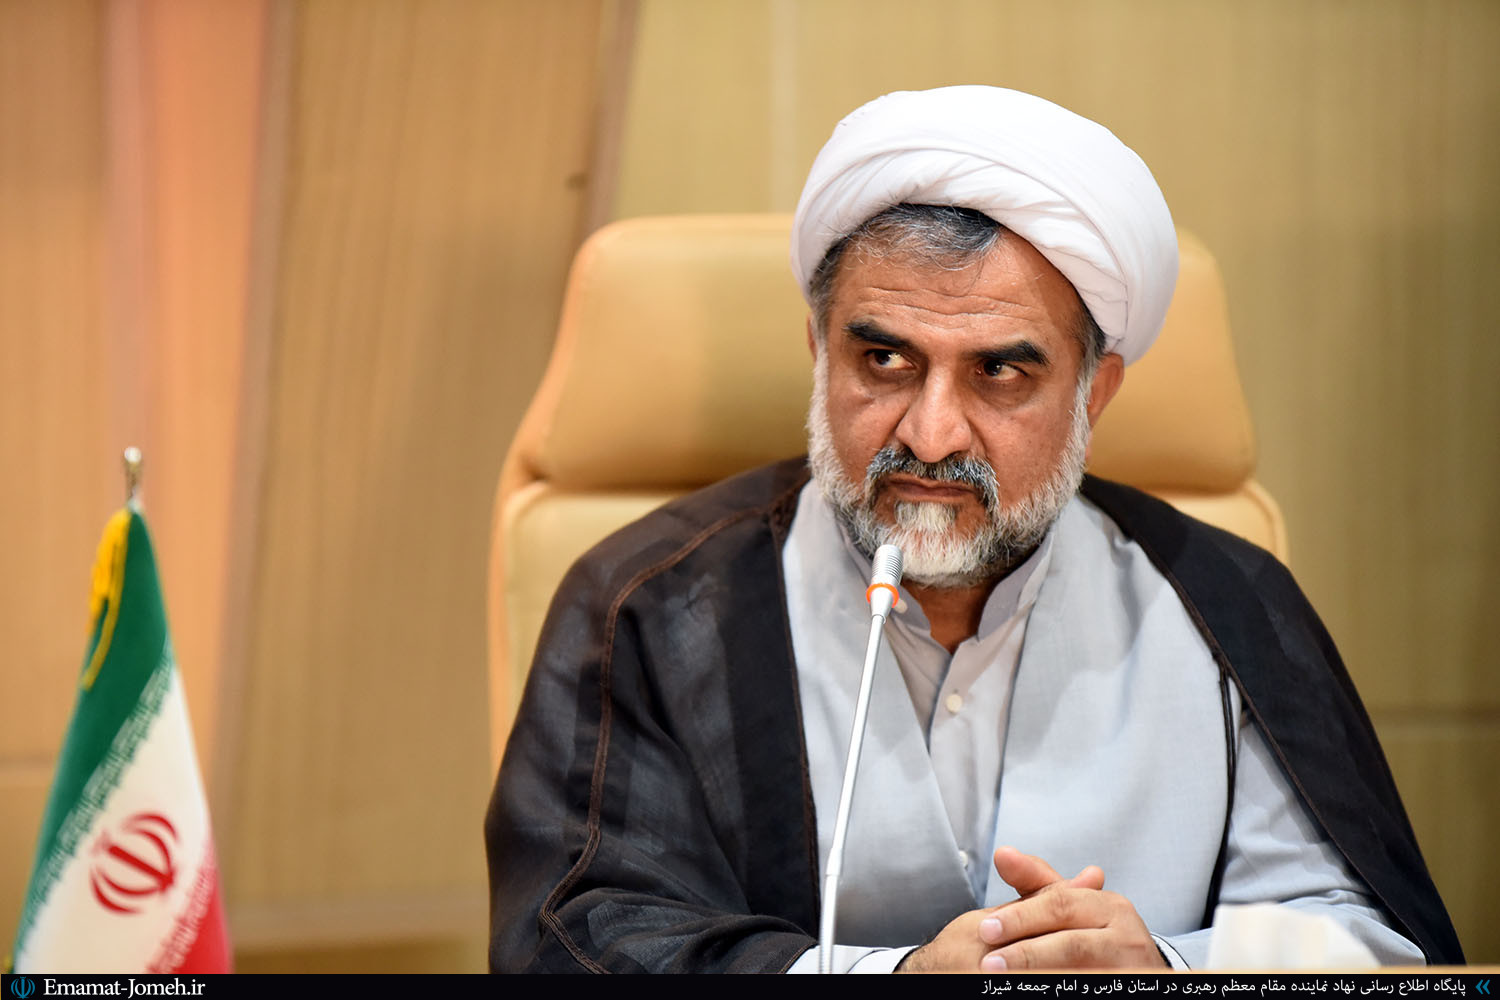 سومین همایش ملی مهدویت و انقلاب اسلامی در شیراز برگزار می شود